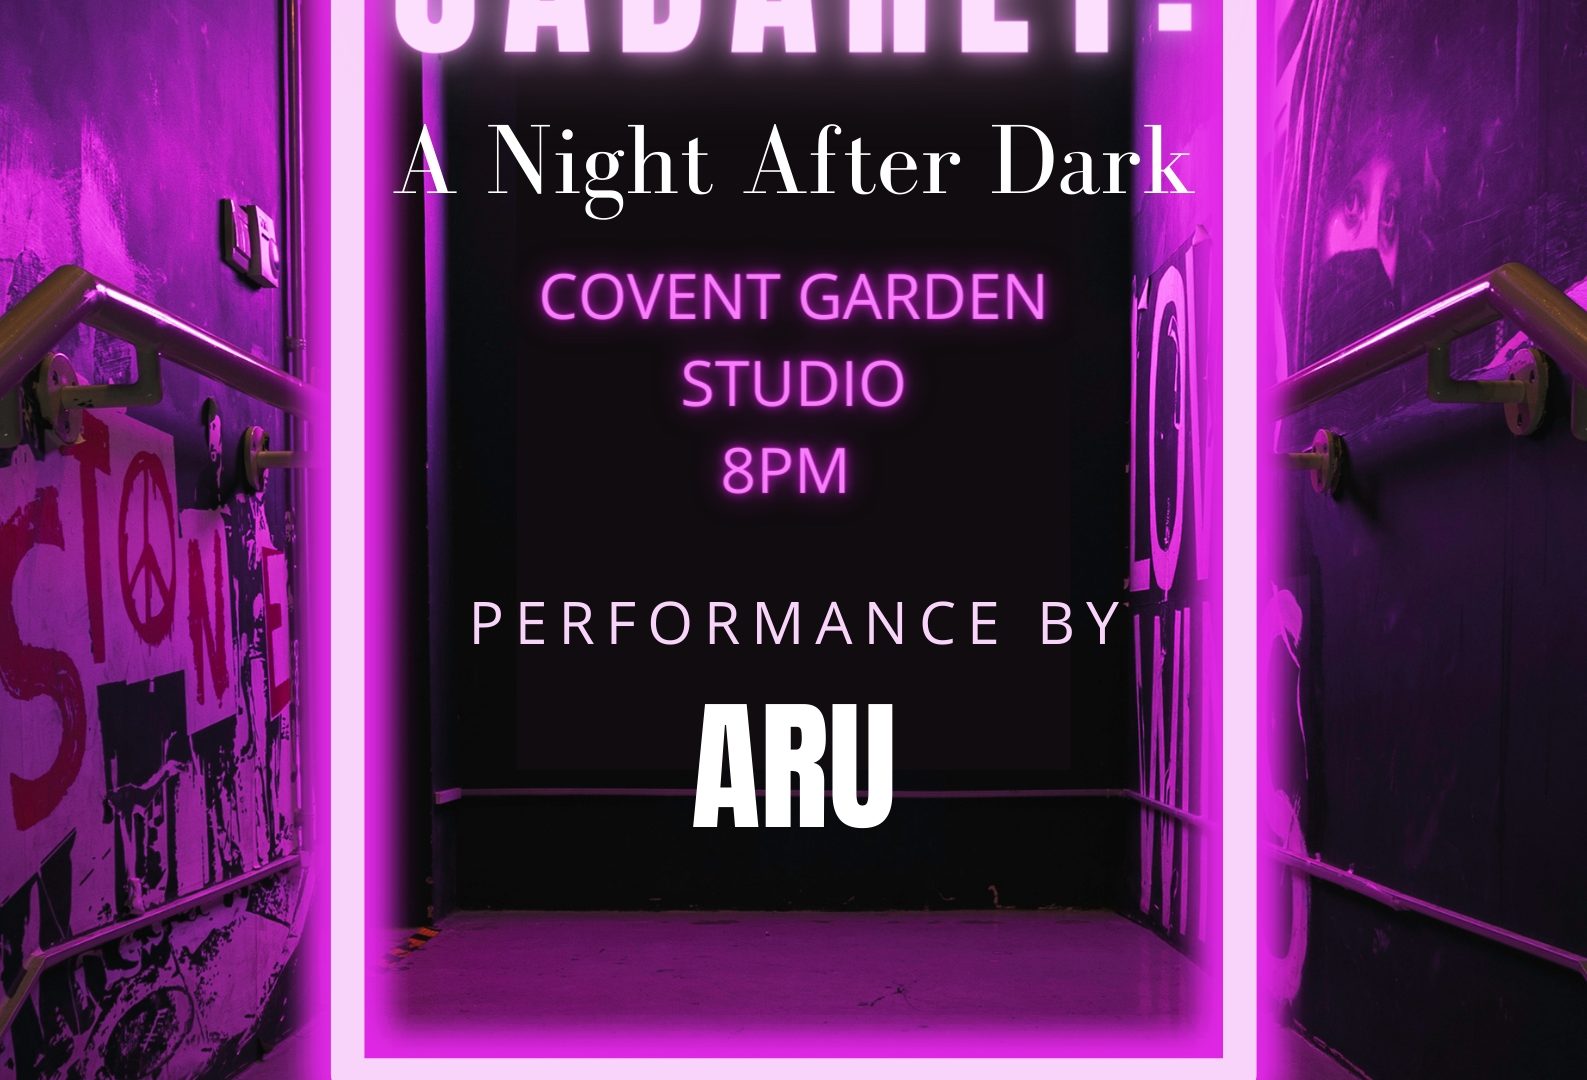 A Cabaret: A Night After Dark